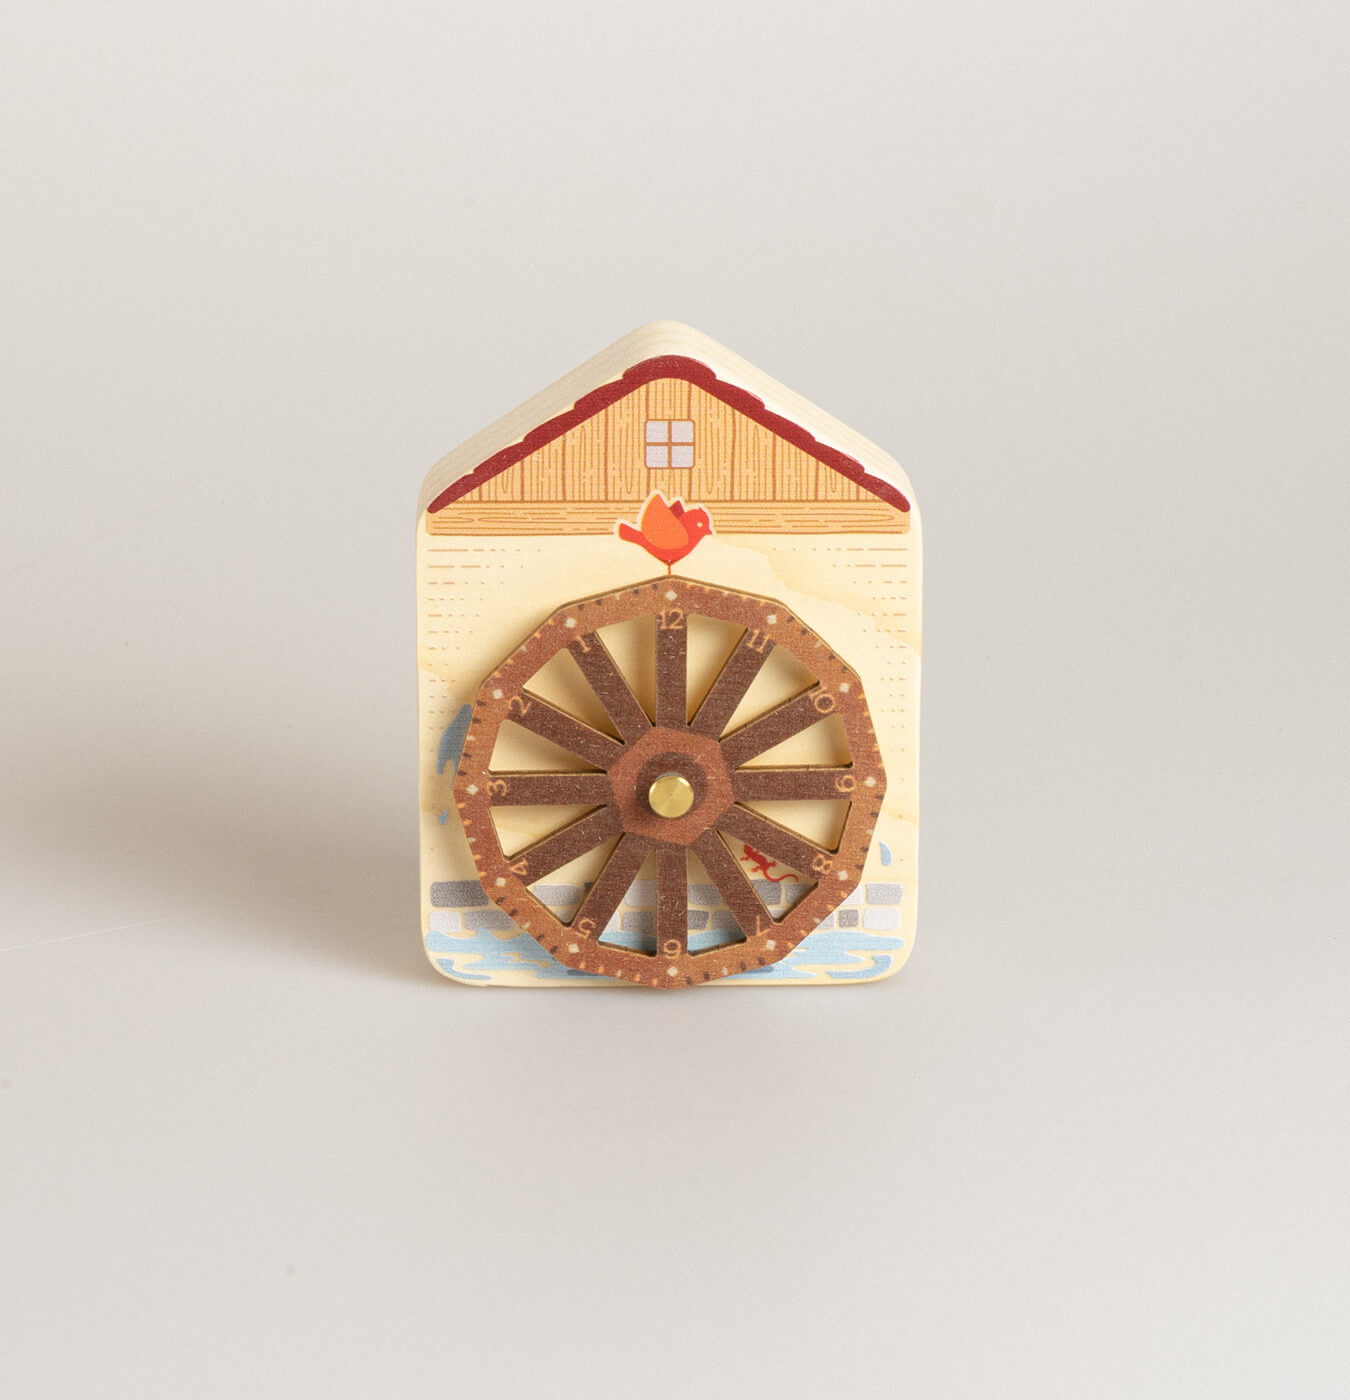 Orologio magnetico a forma di casetta in legno di abete